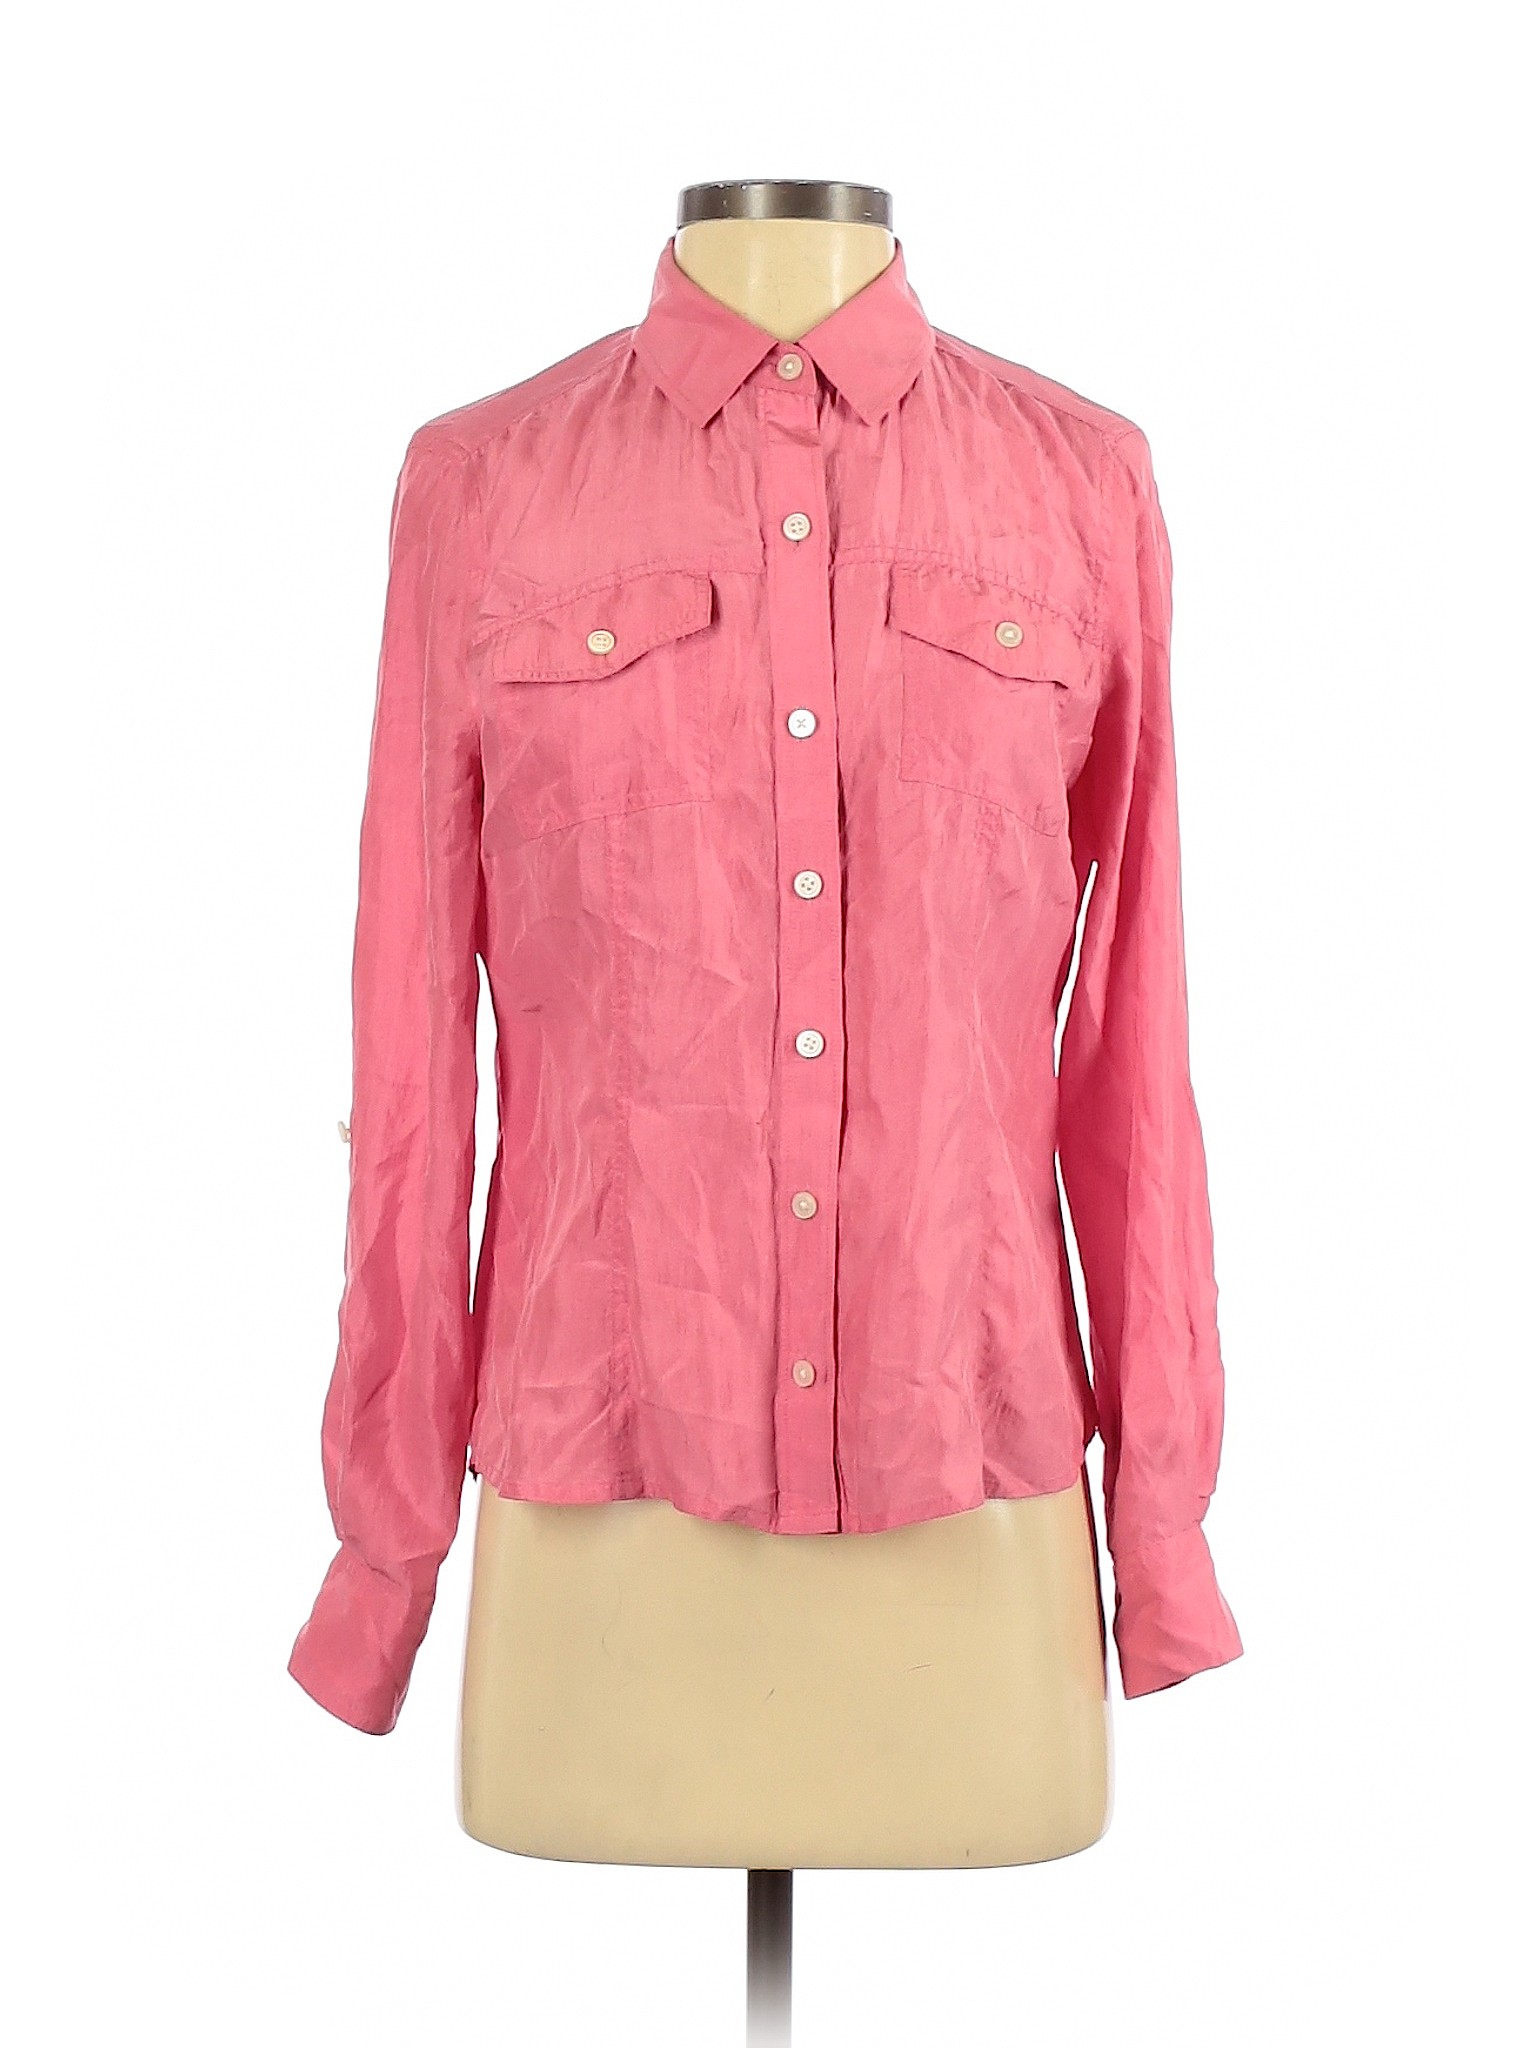 Banana Republic Women Pink Long Sleeve Button-Down Shirt S | eBay